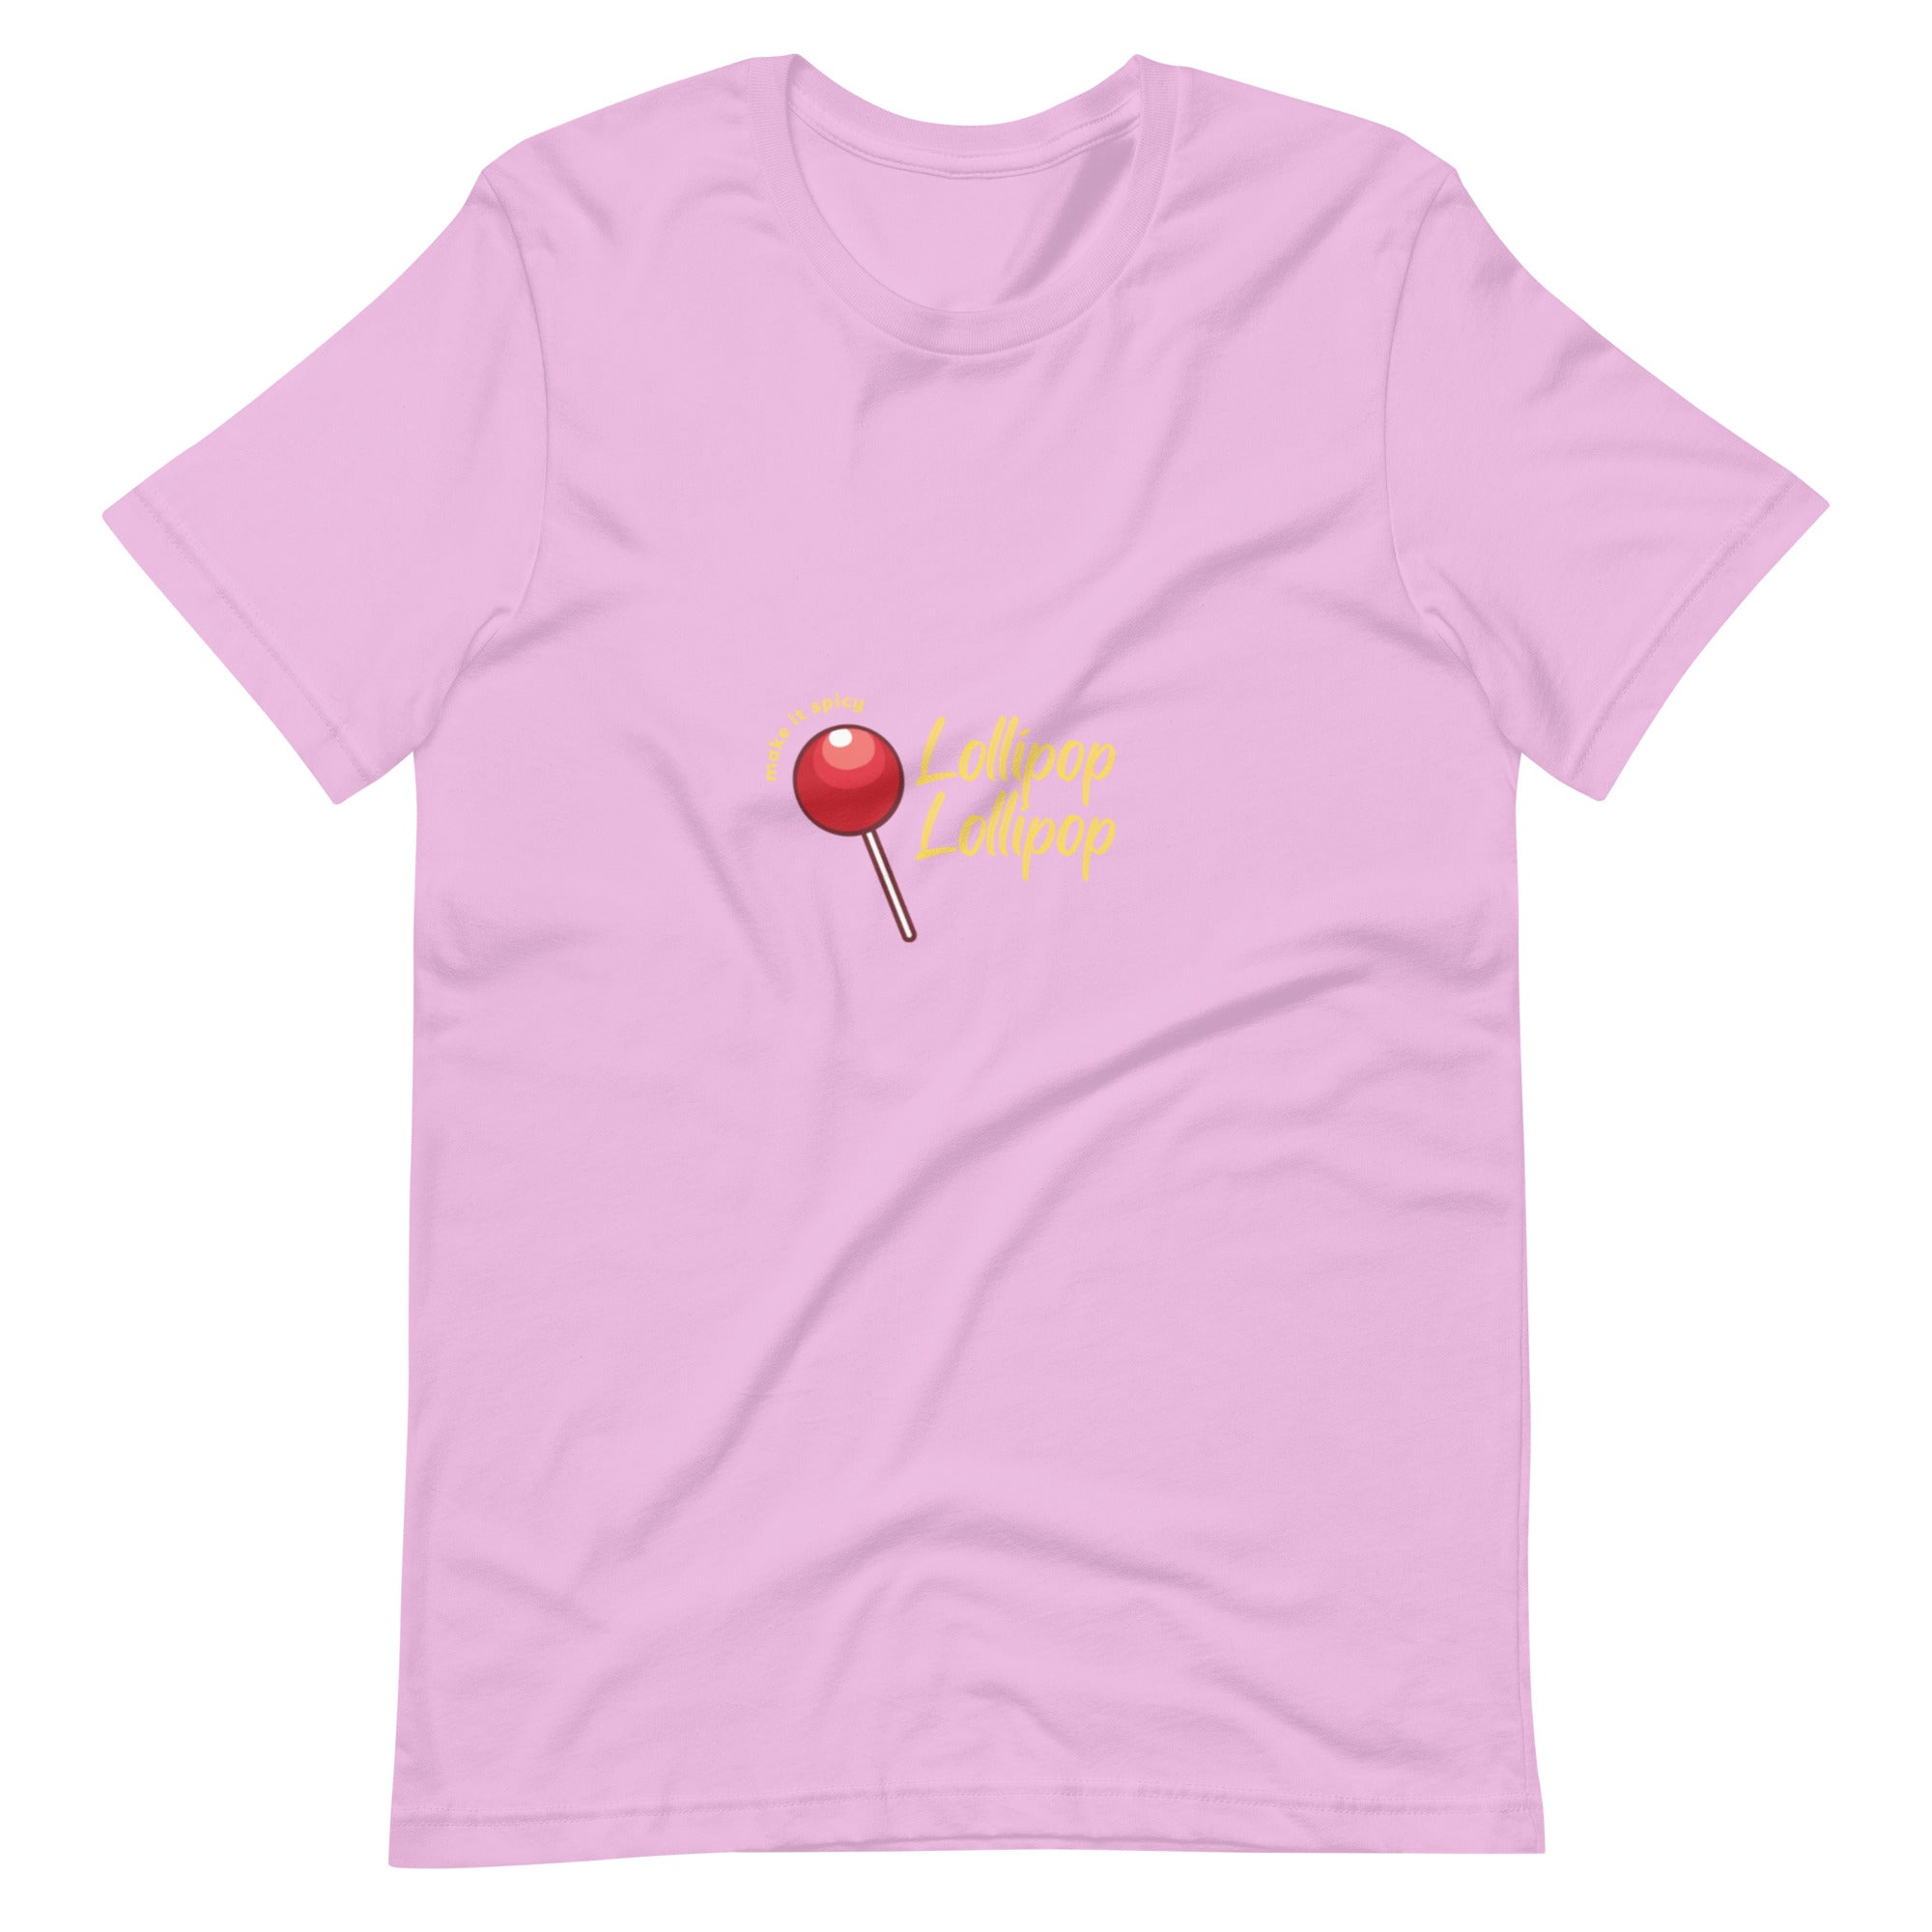 Lollipop Unisex t-shirt